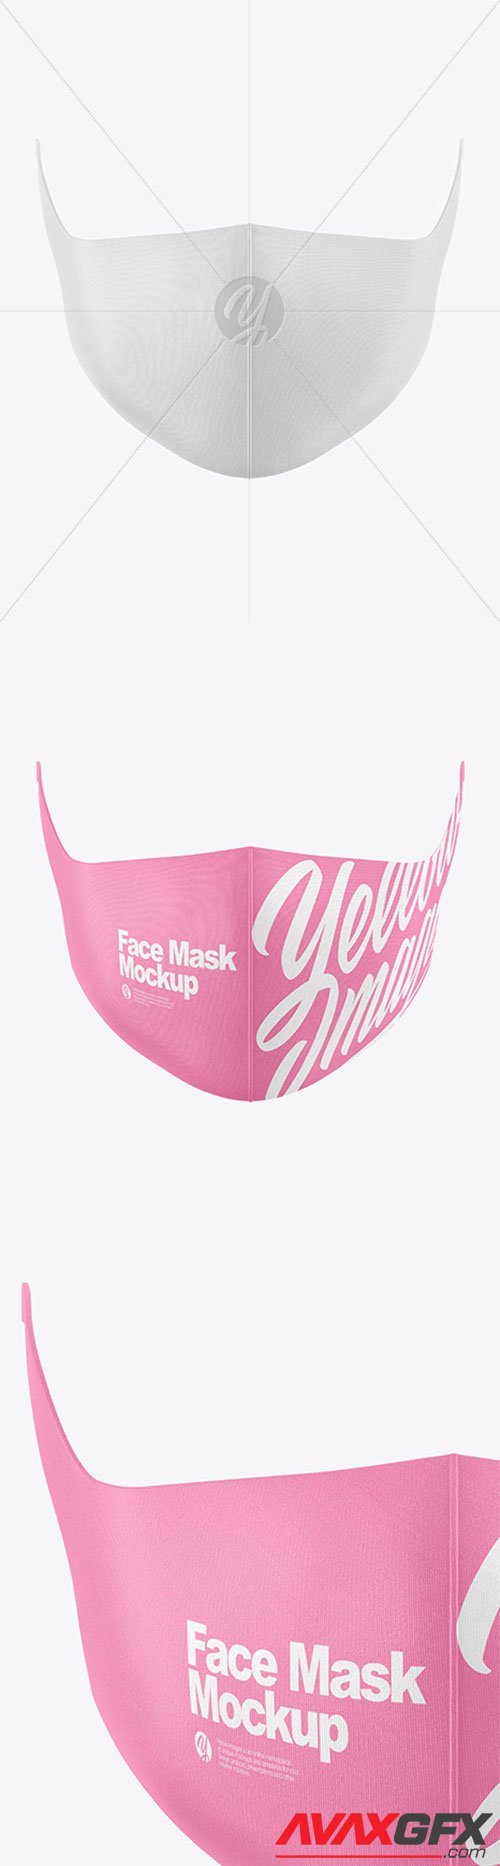 Face Mask Mockup 61455